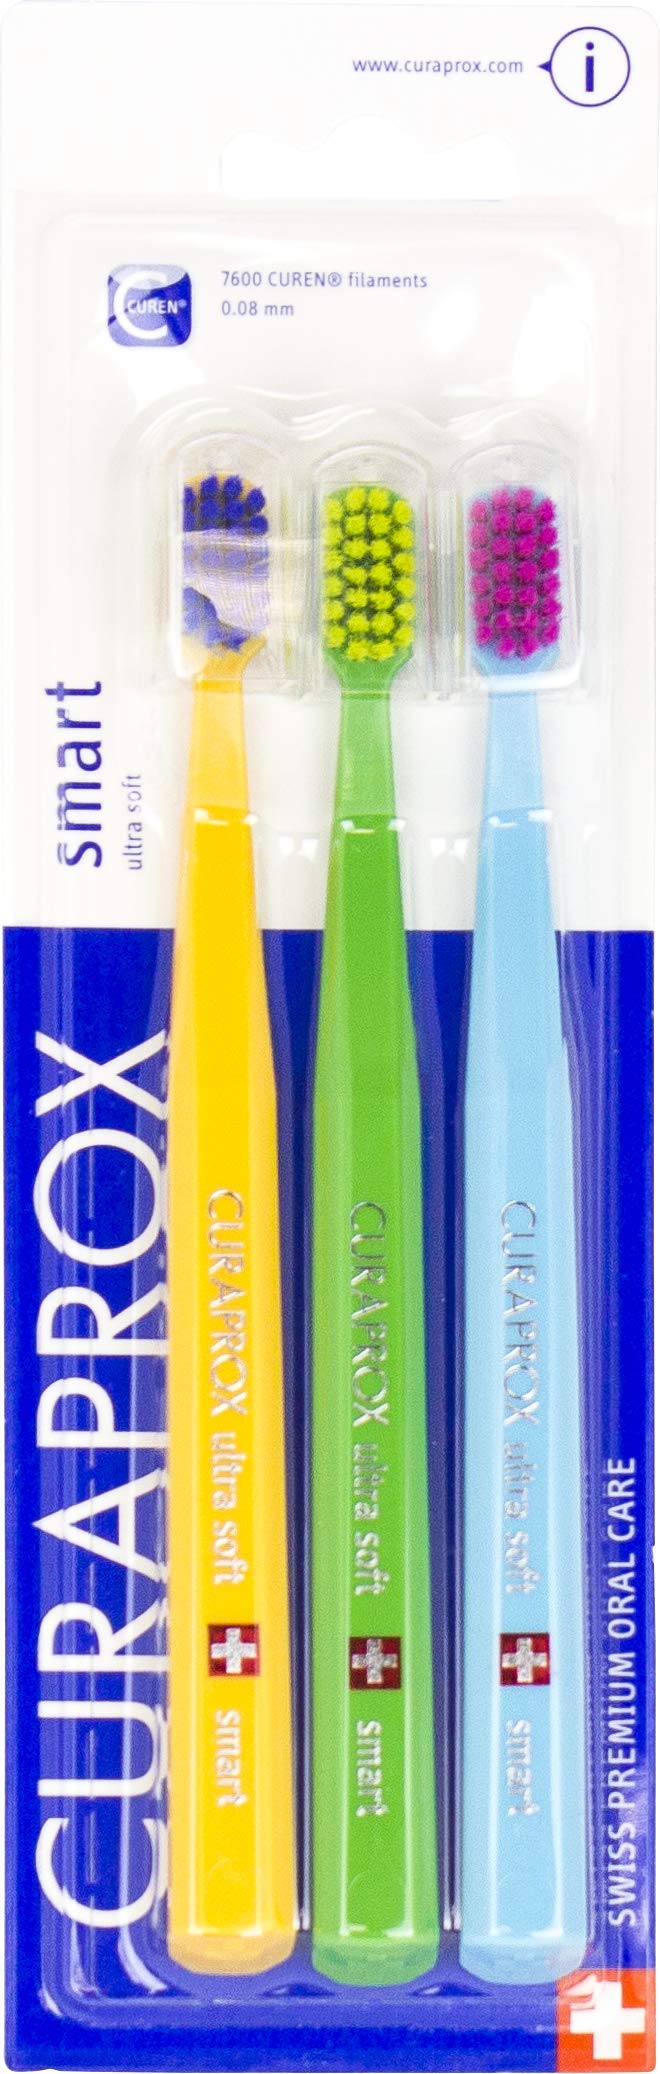 Curaprox Trio Set - Cs Smart Toothbrushes, Mixed, CSSMARTPACK